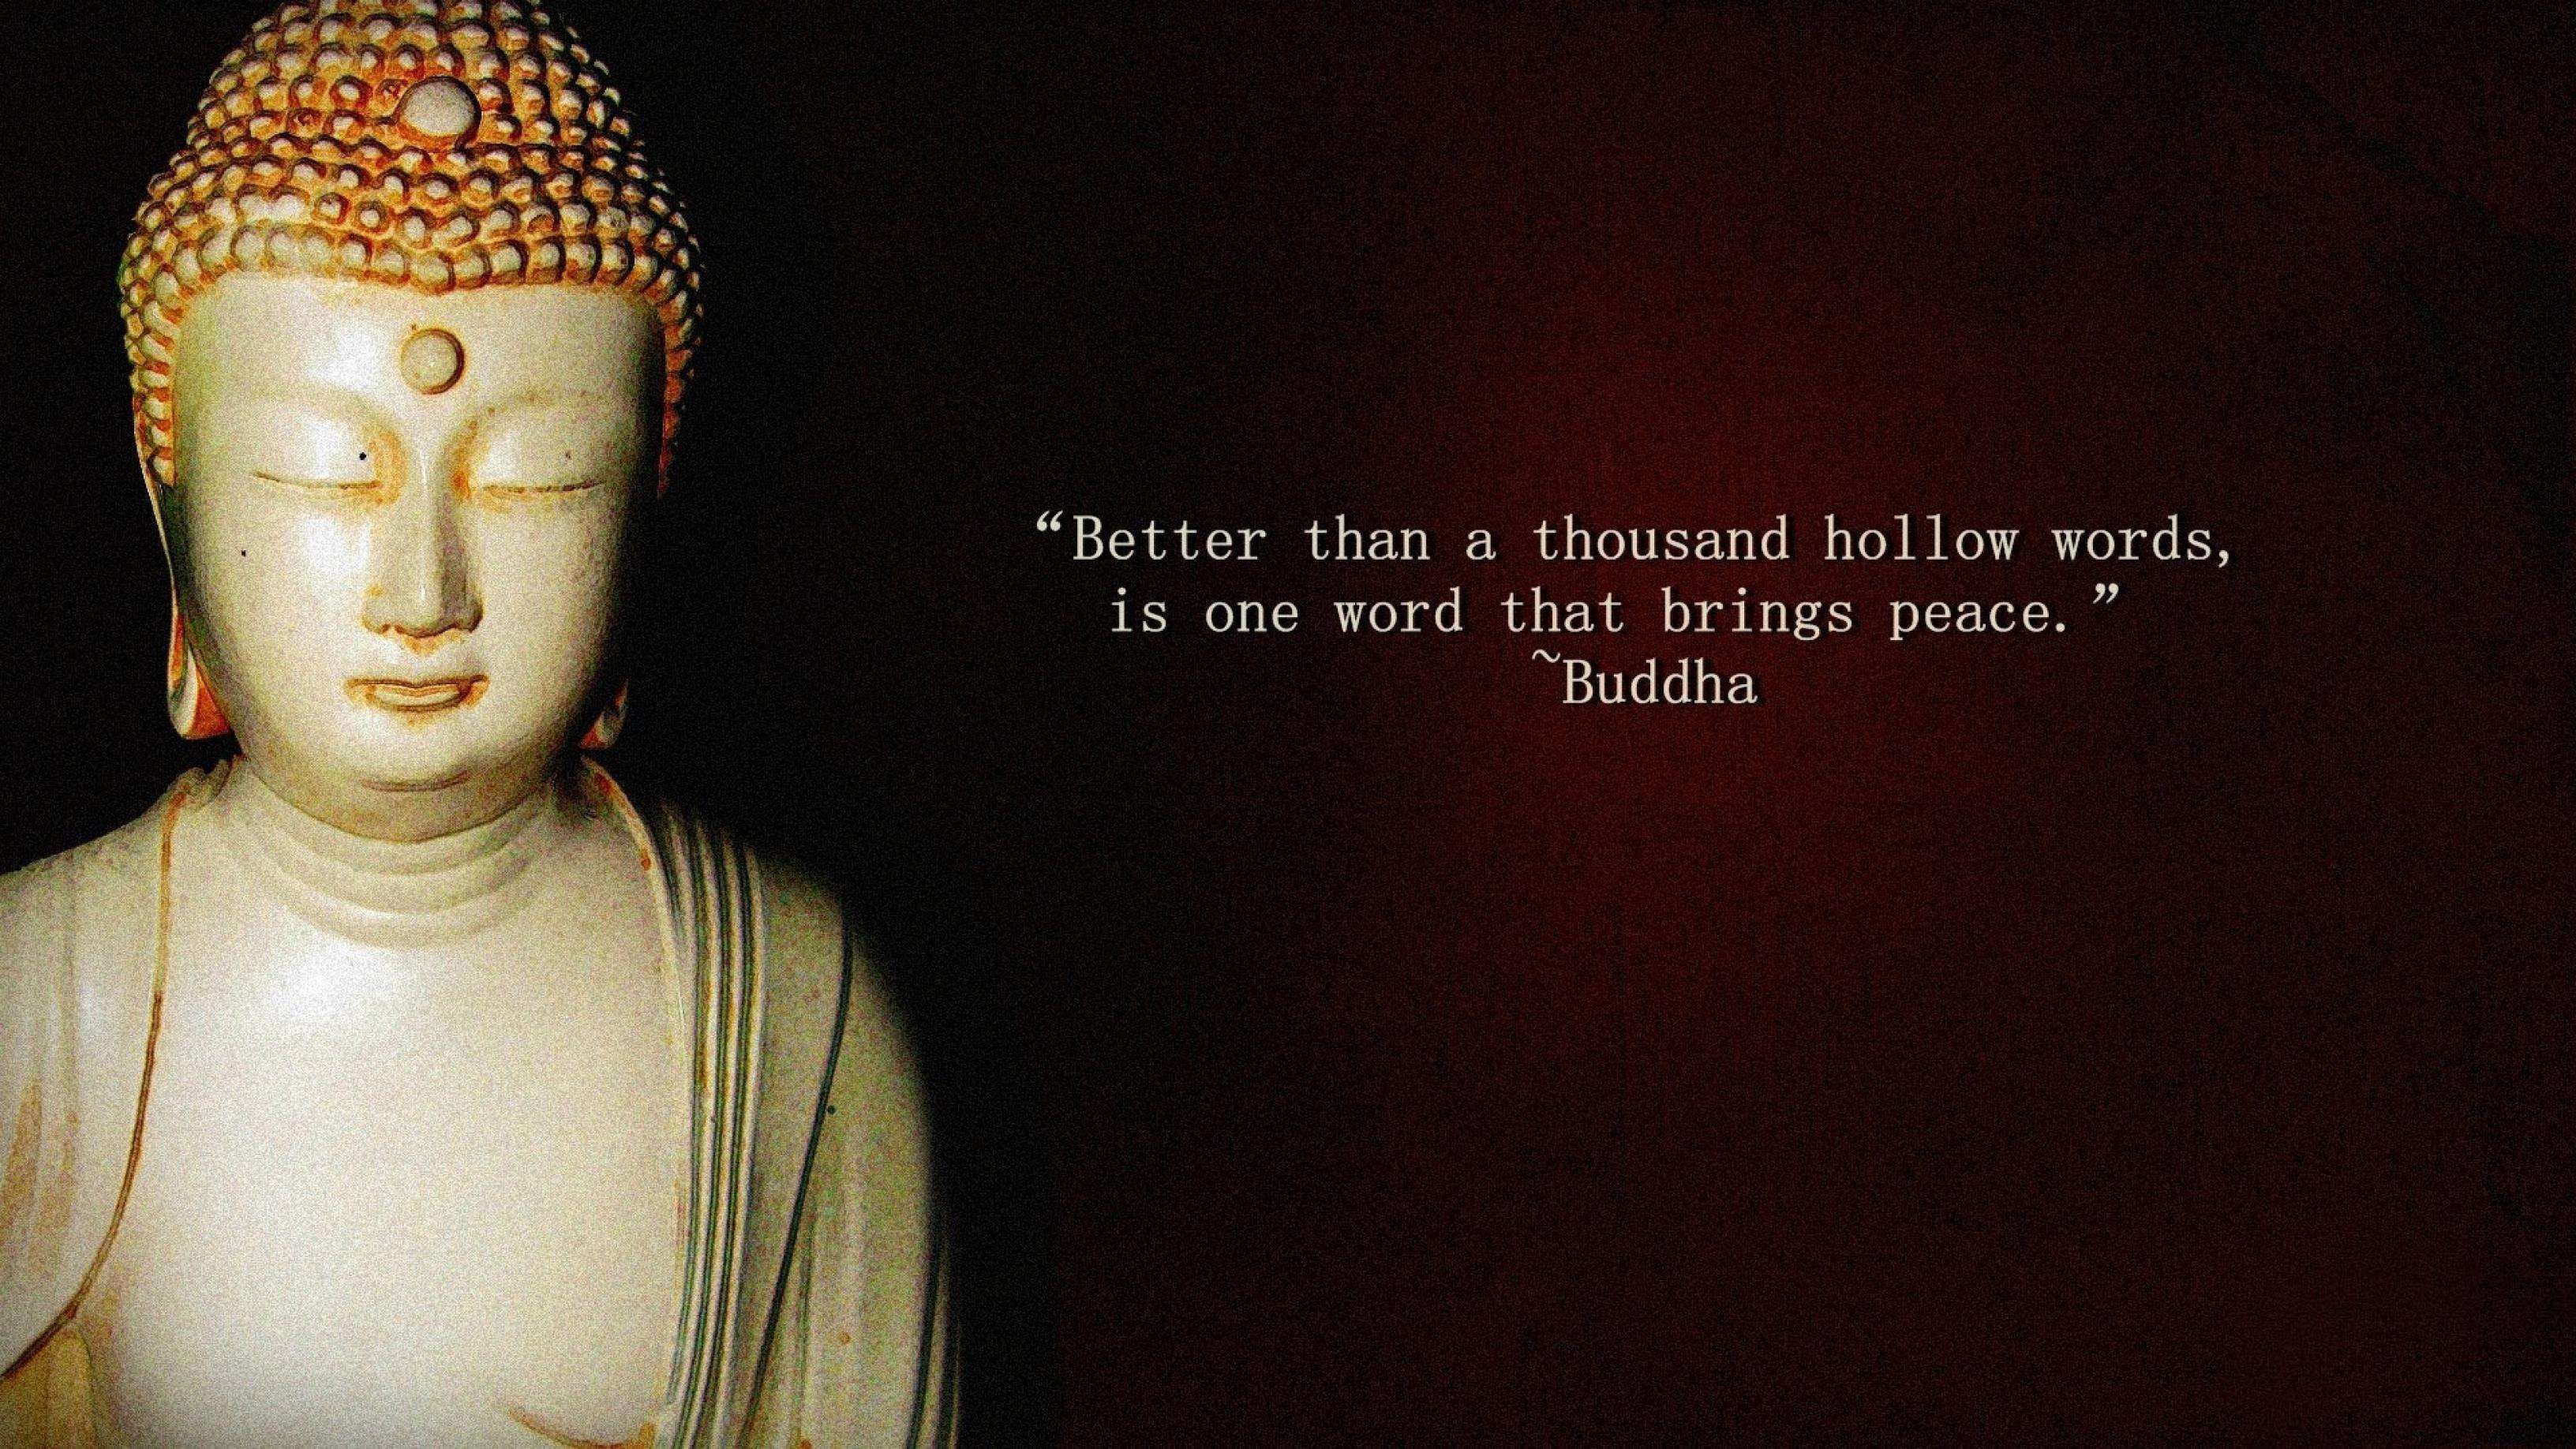 Buddha's updesh photo